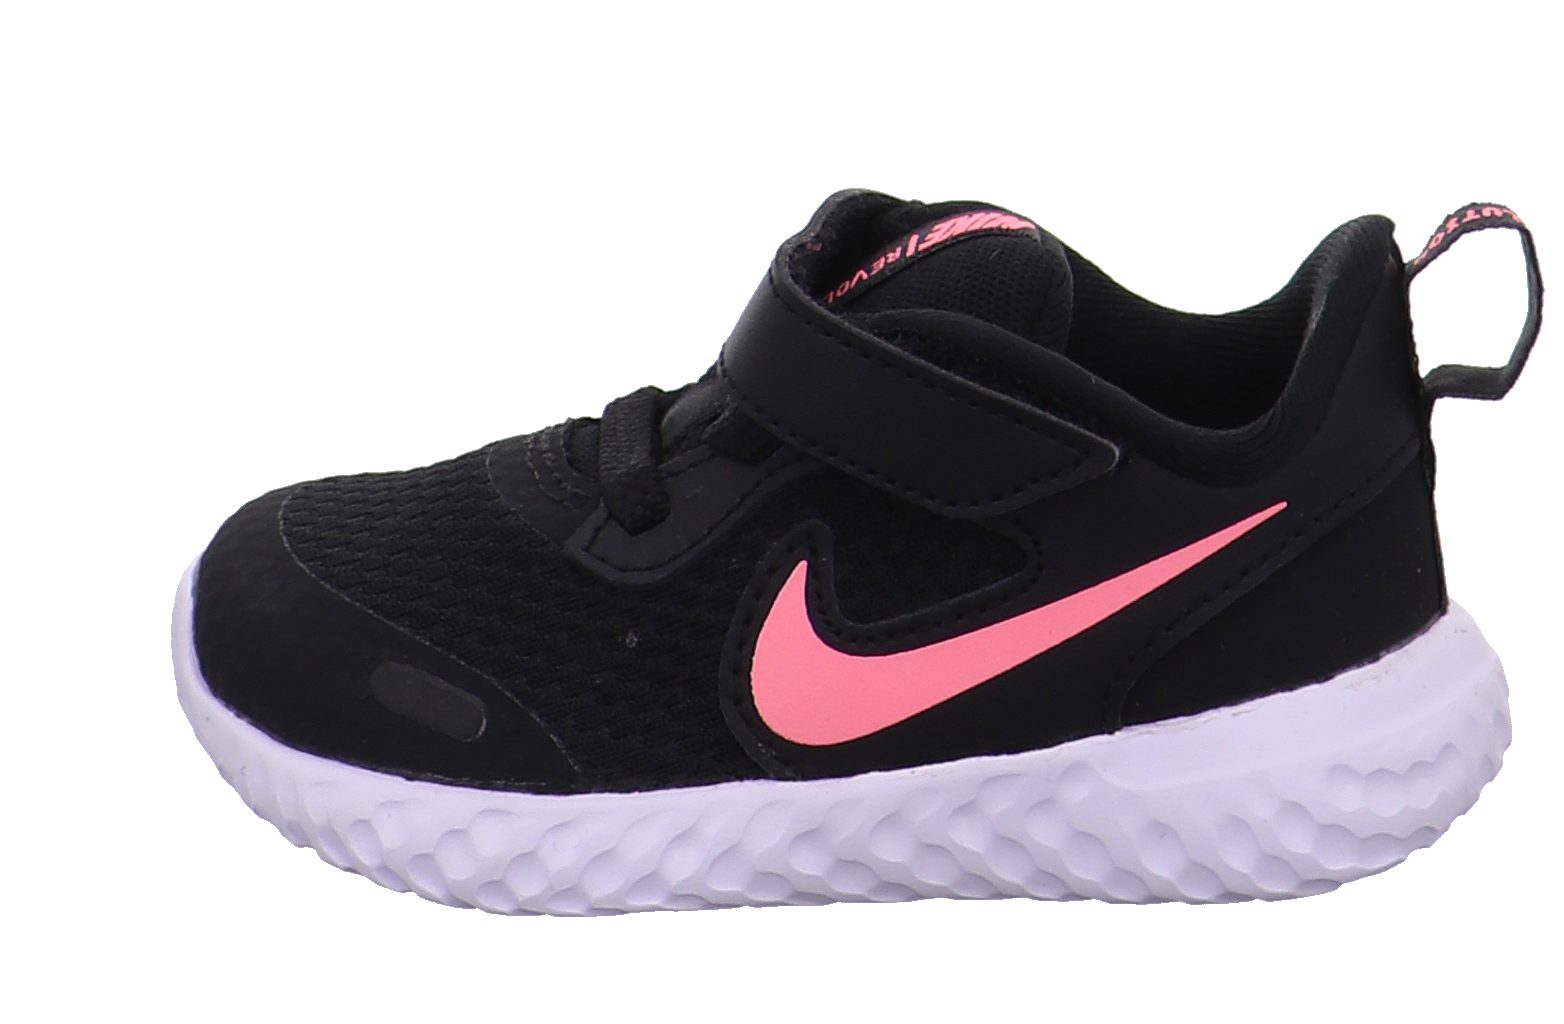 Nike Krabbel- und Lauflernschuhe schwarz kombi Bild1